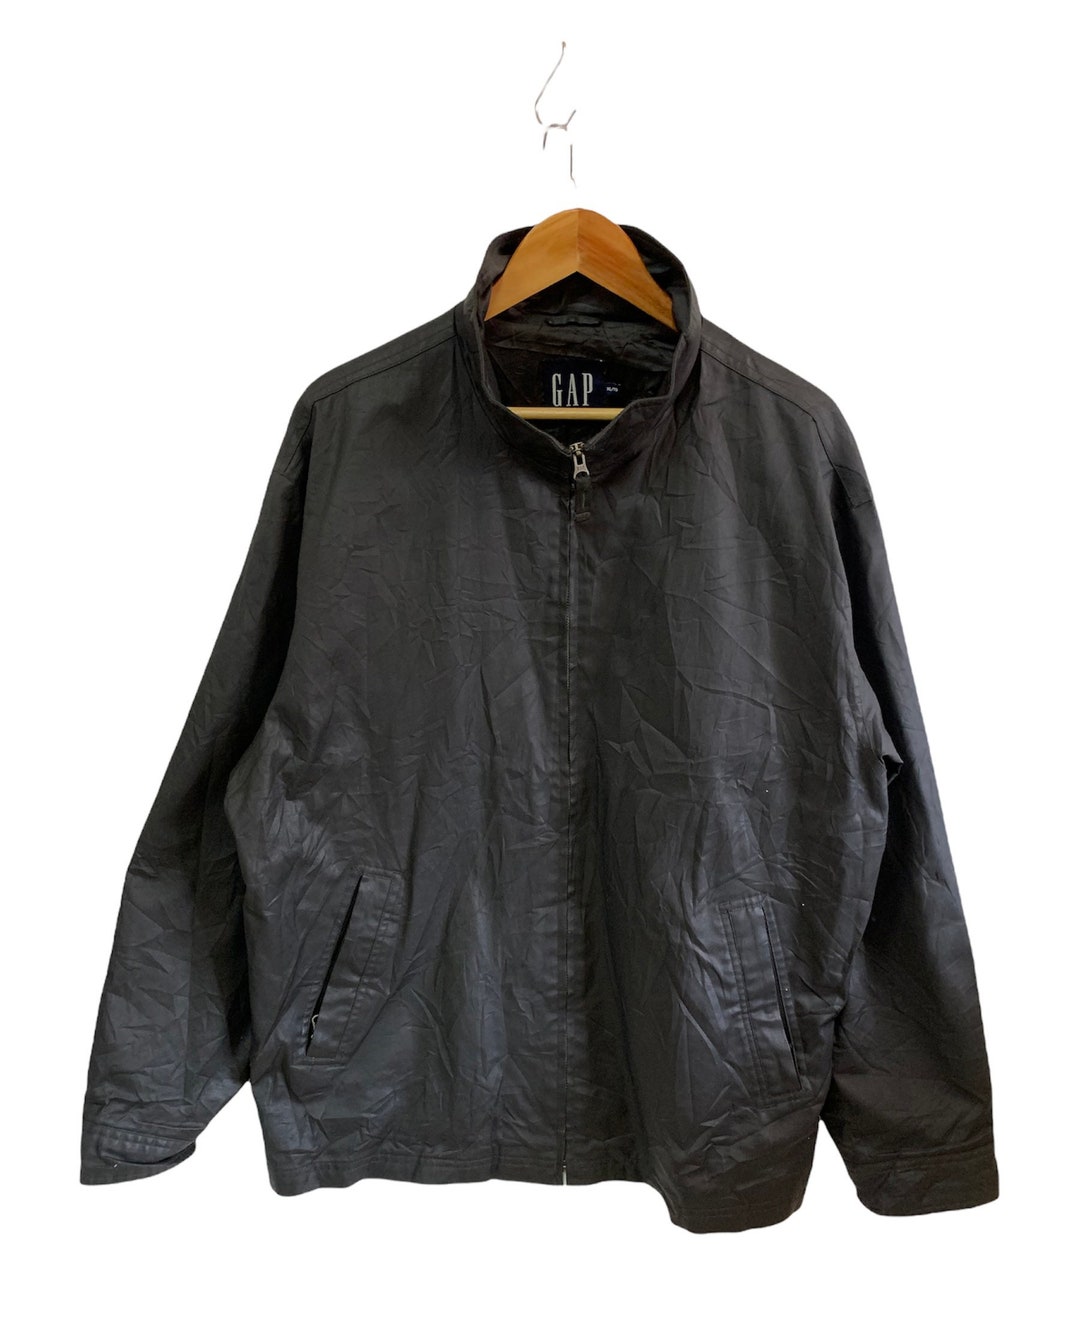 Vintage Gap Chore Jacket Down Jacket All Black Xl Size - Etsy